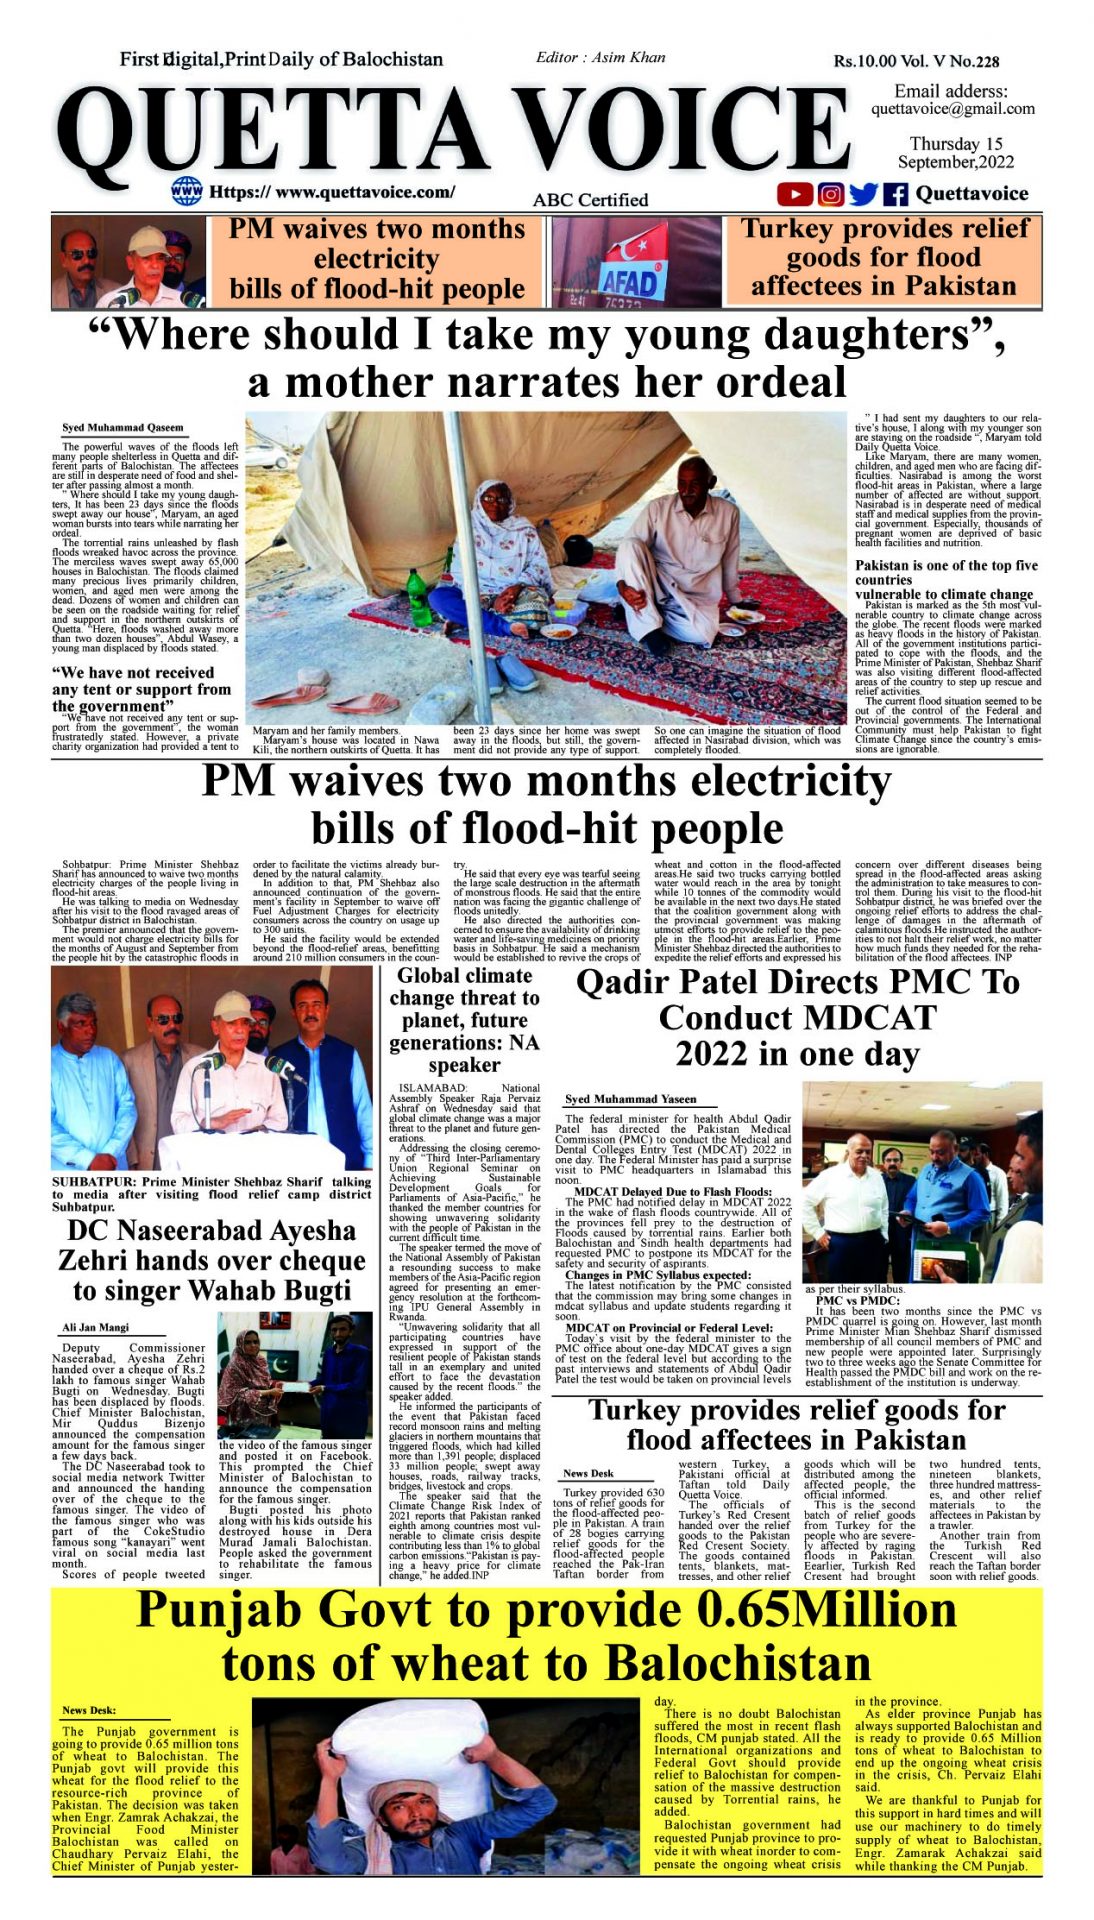 Quetta Voice Newspaper Thursday, September 15, 2022